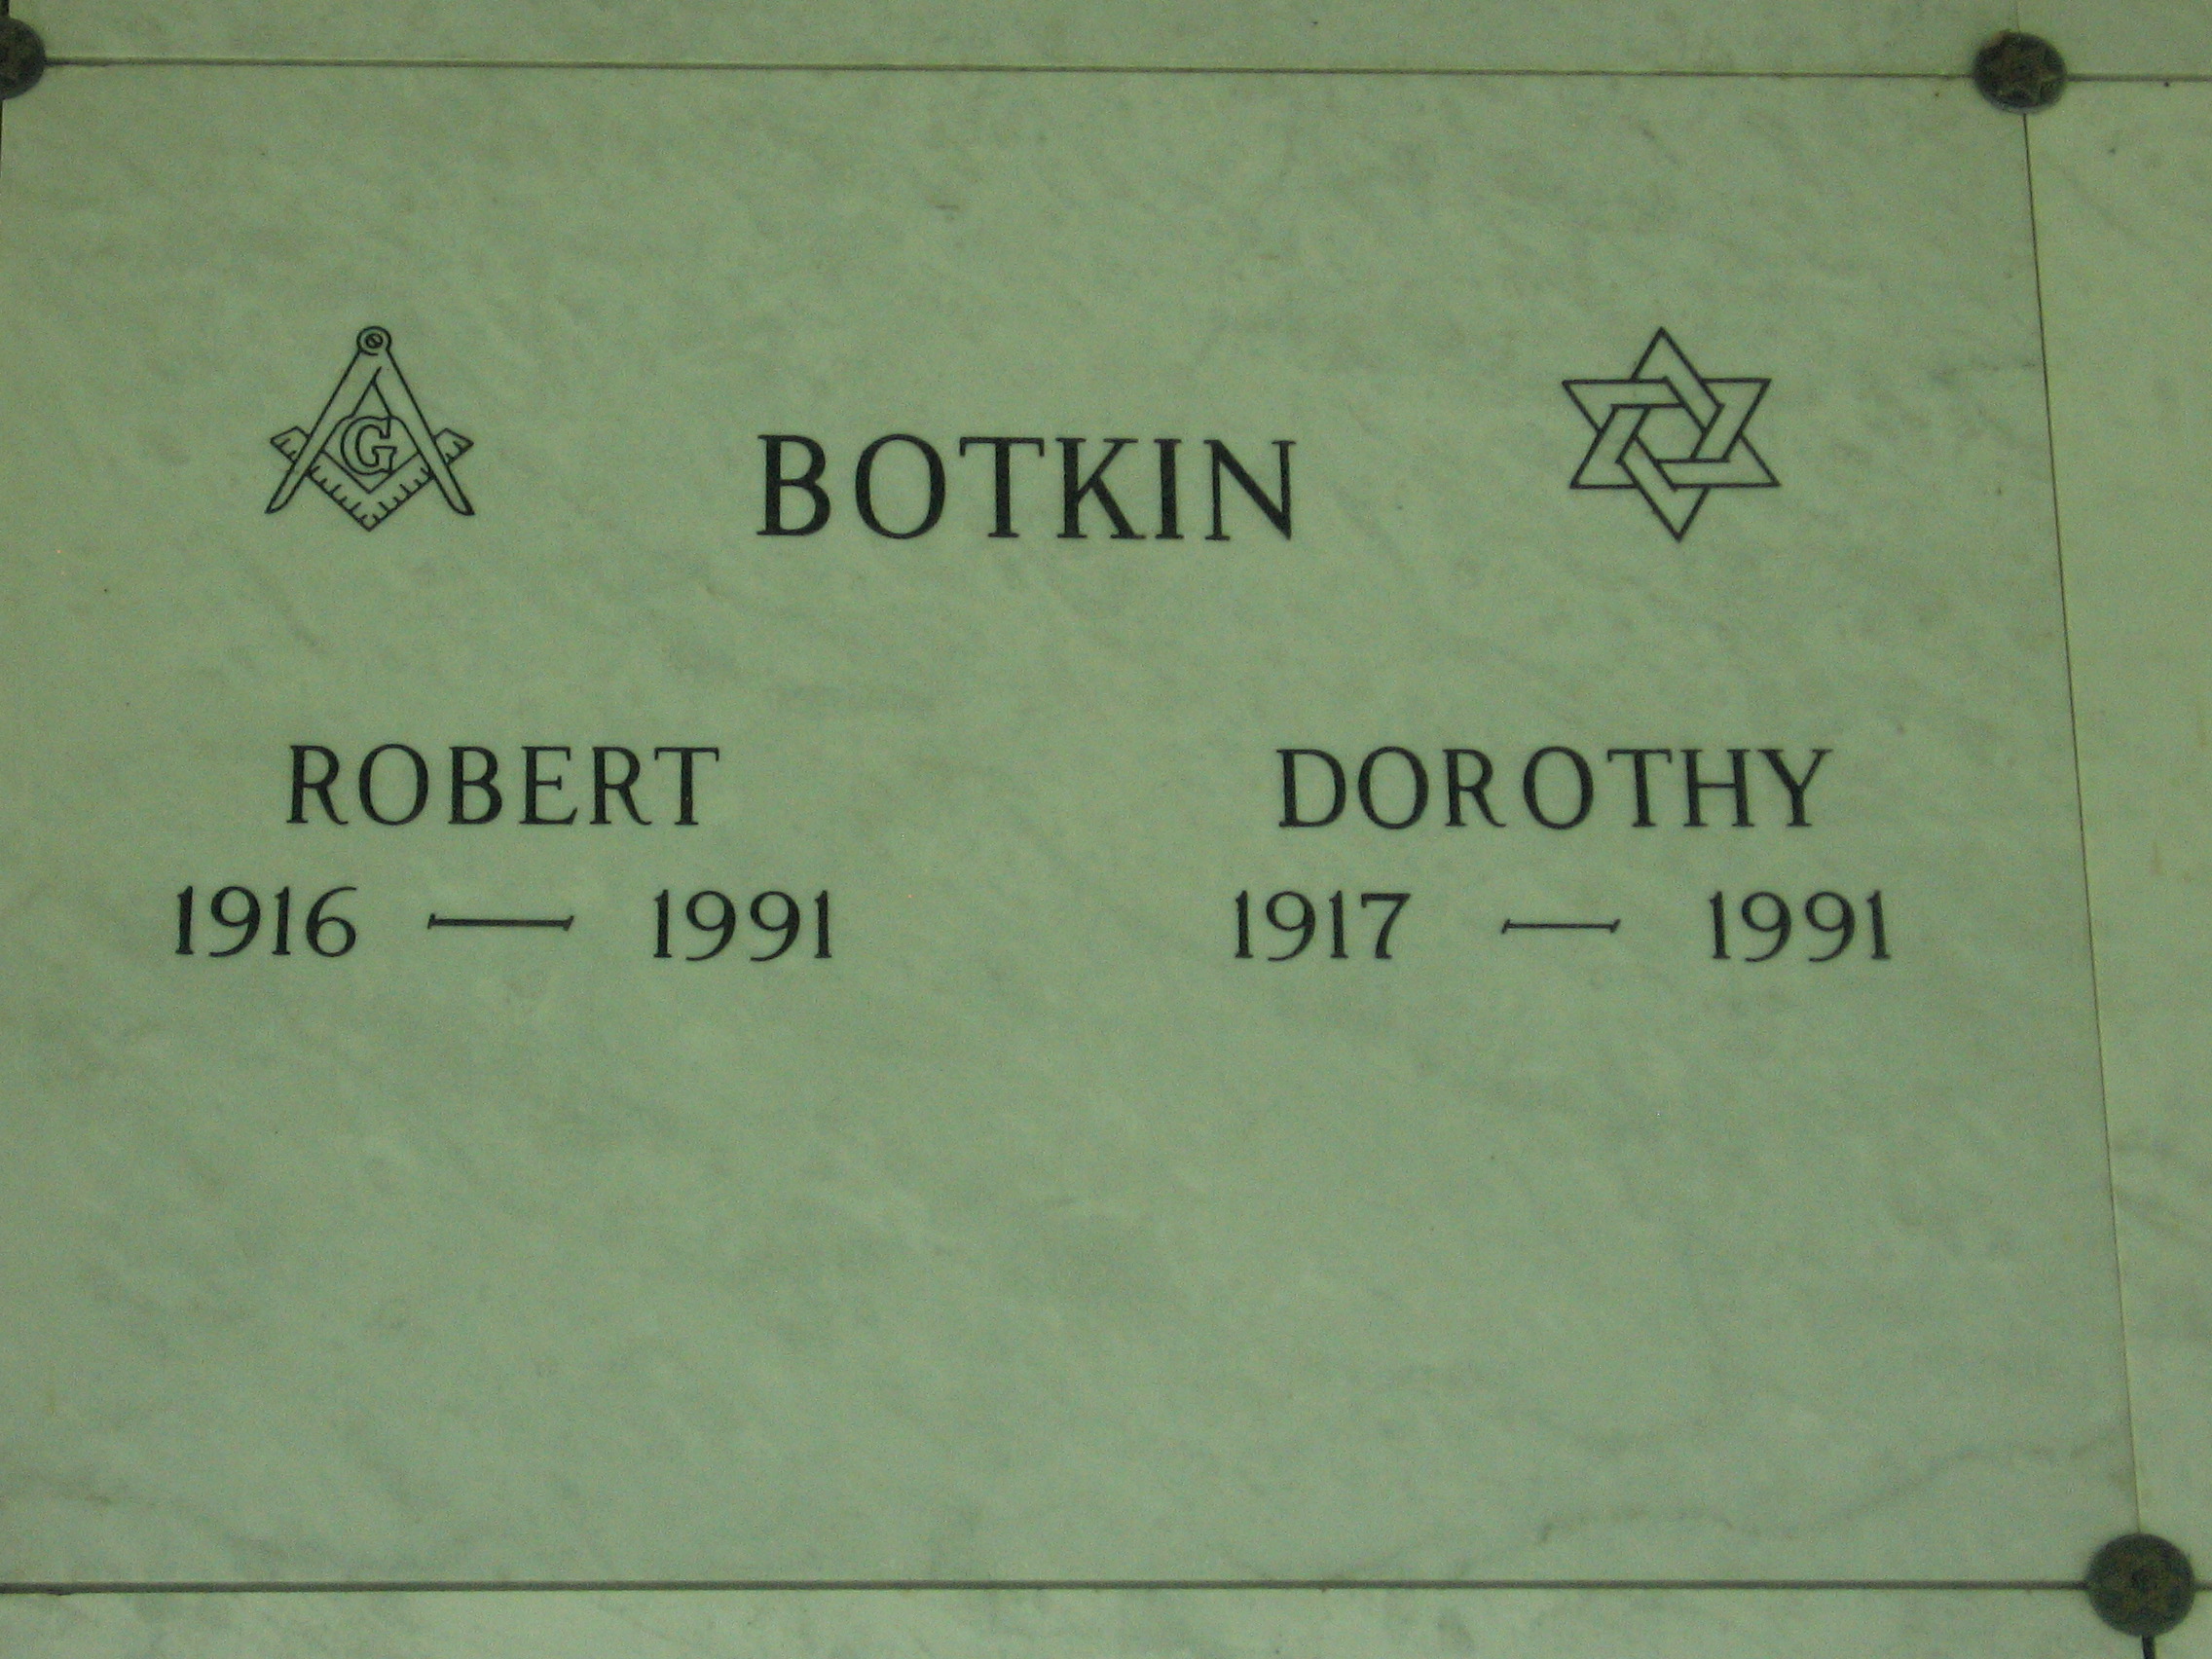 Dorothy Botkin